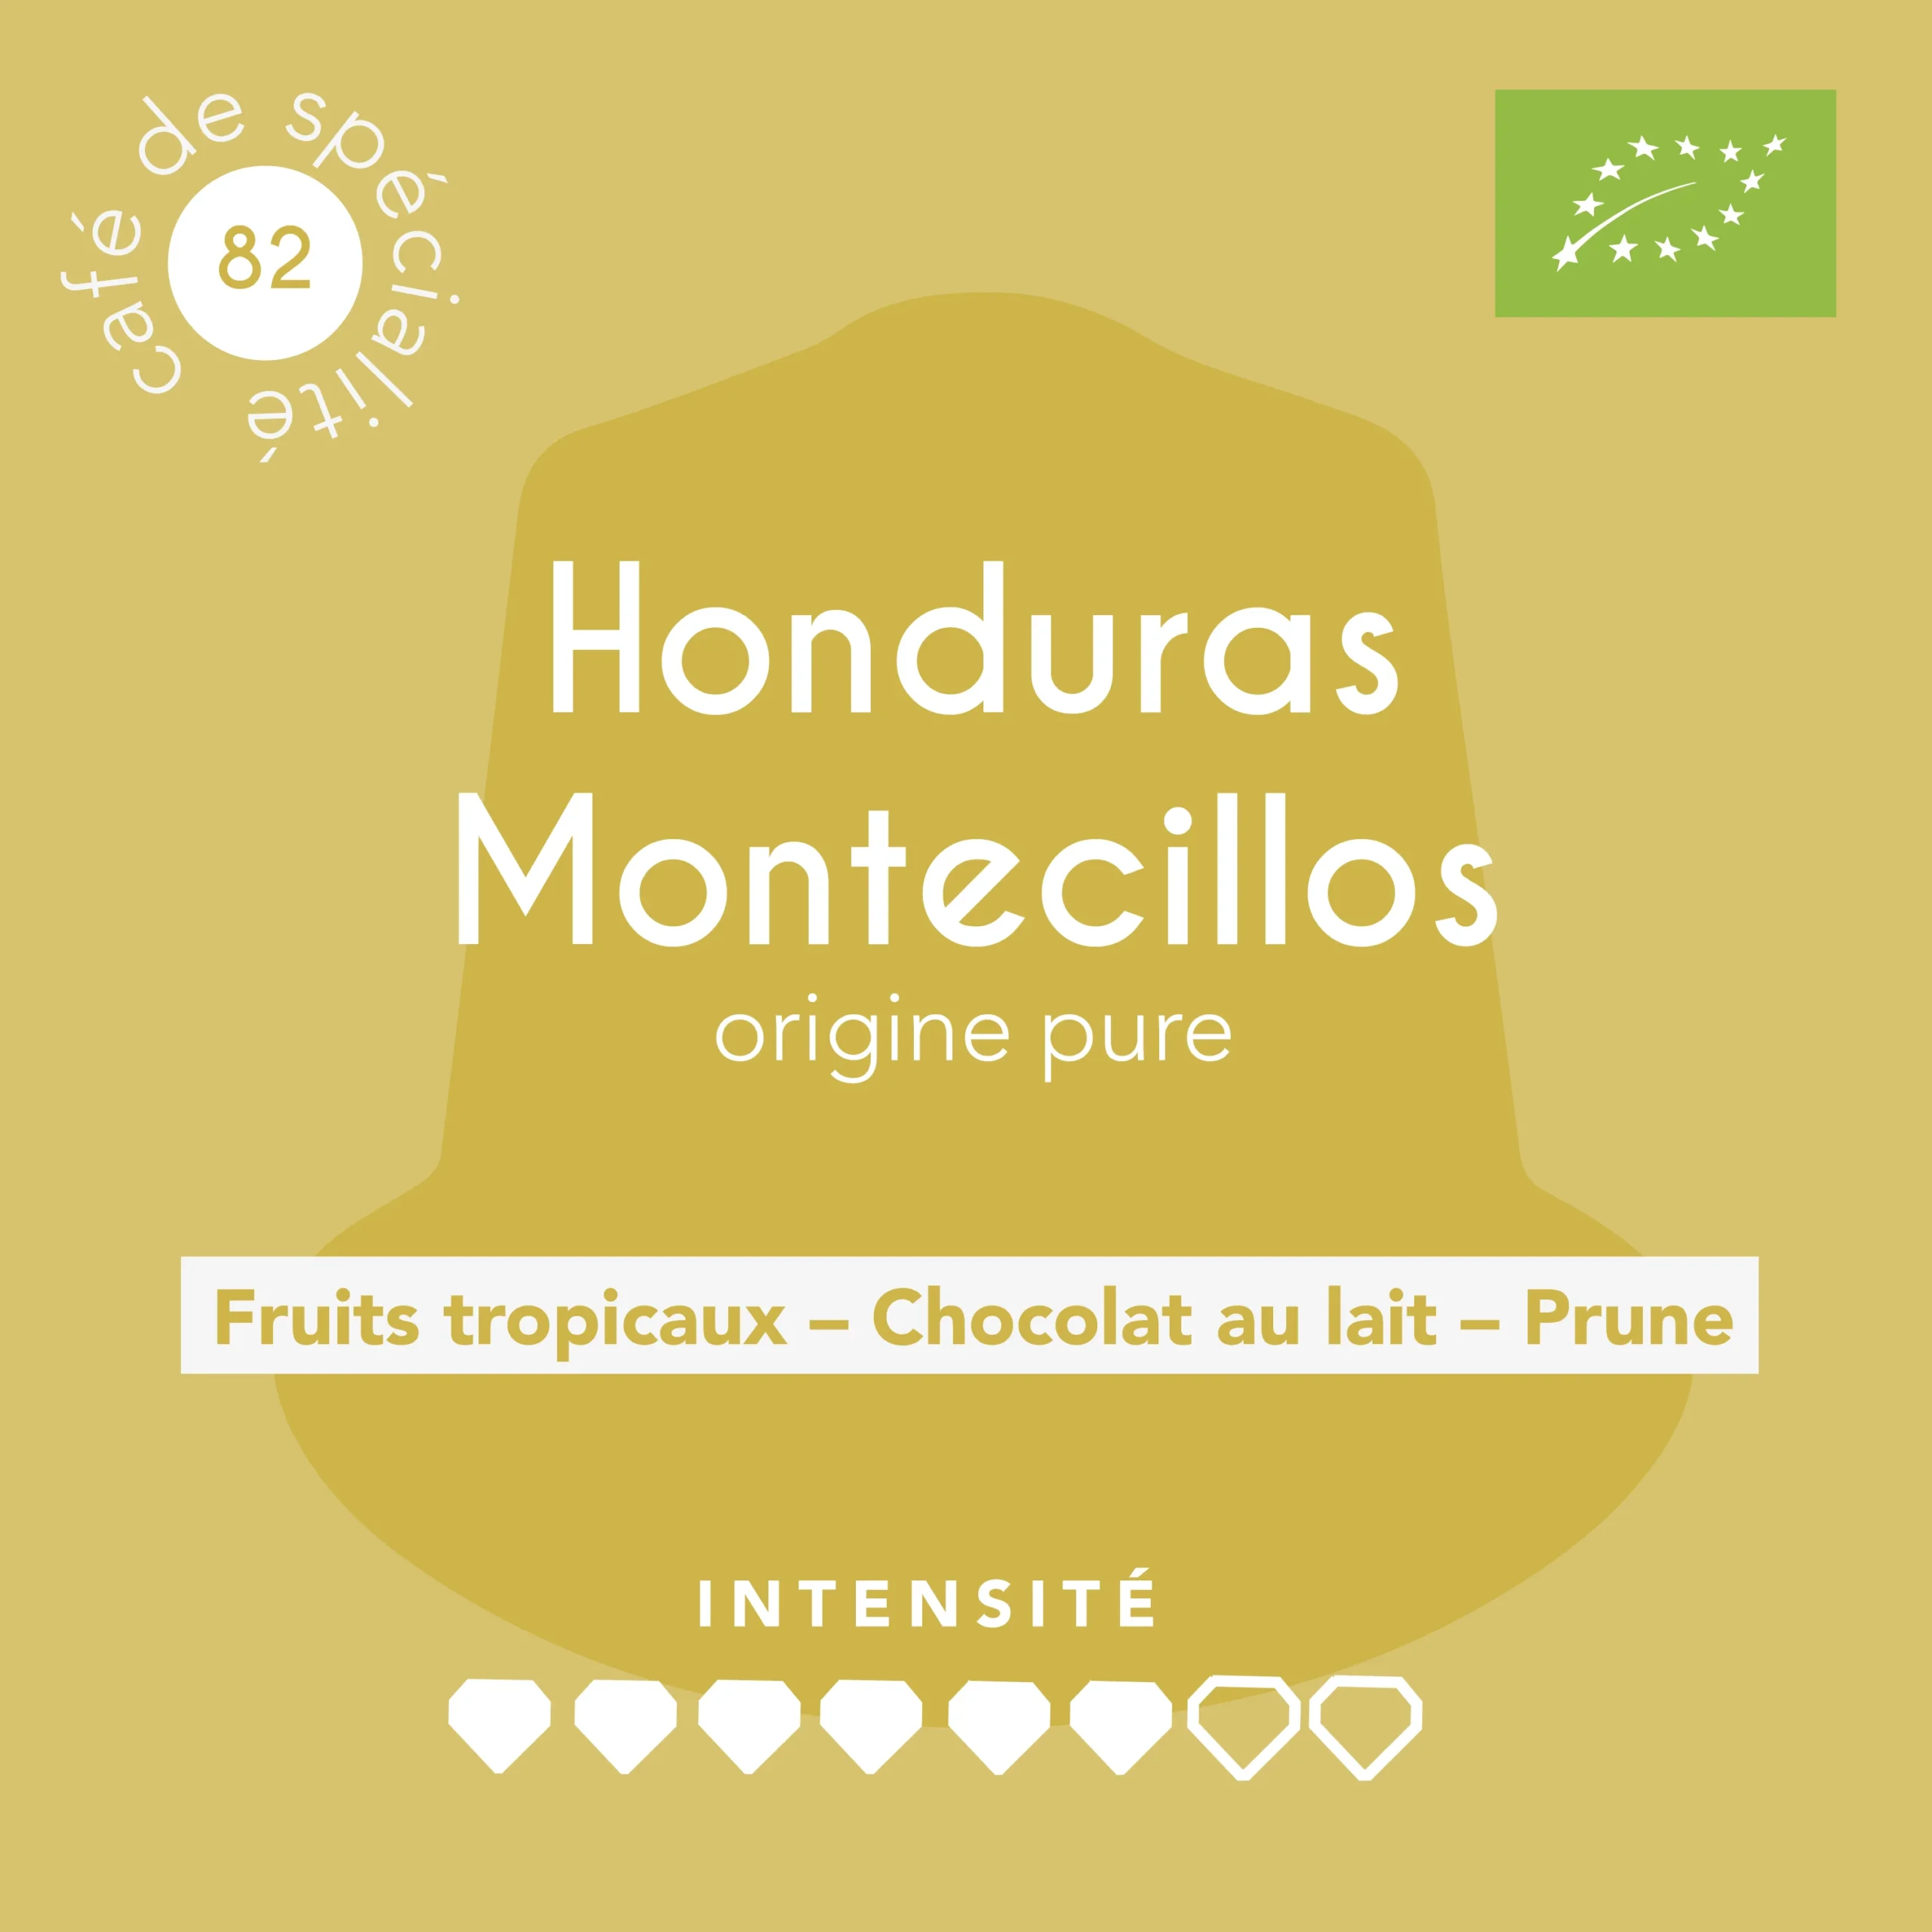 HONDURAS CAPS